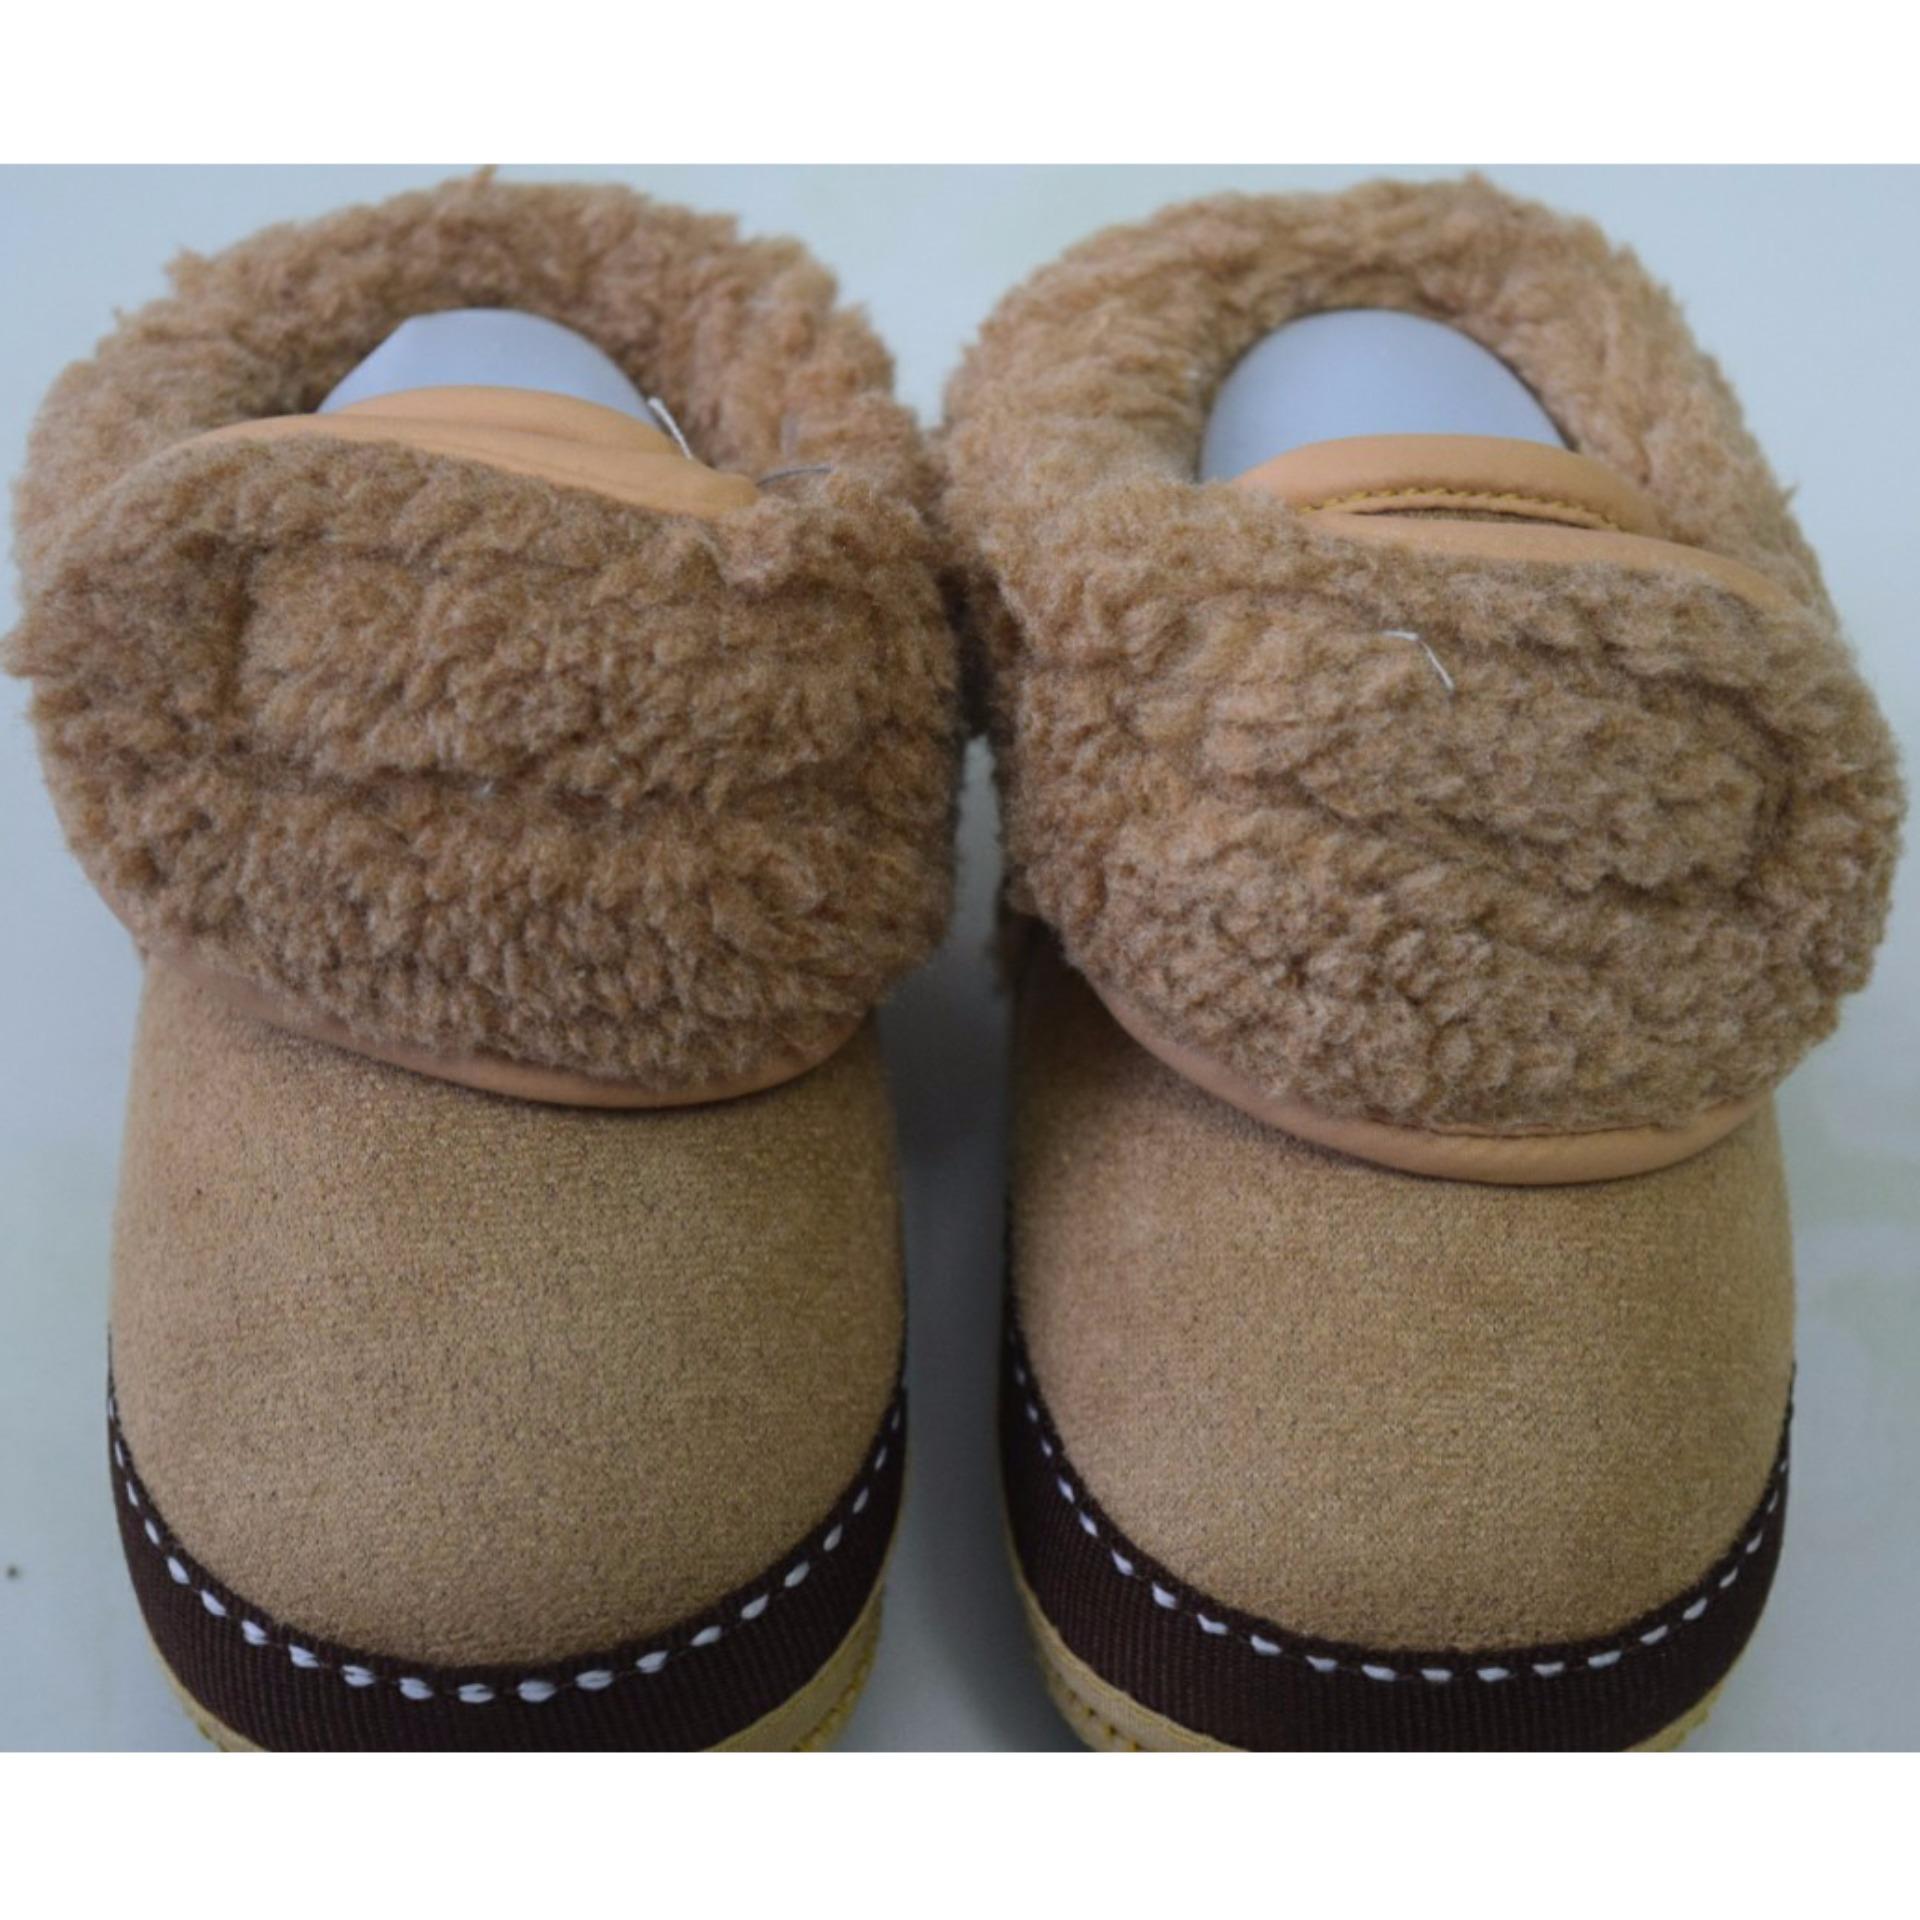 Giày bốt giữ ấm chân cho bé từ 6-12 tháng tuổi (Màu sô cô la)